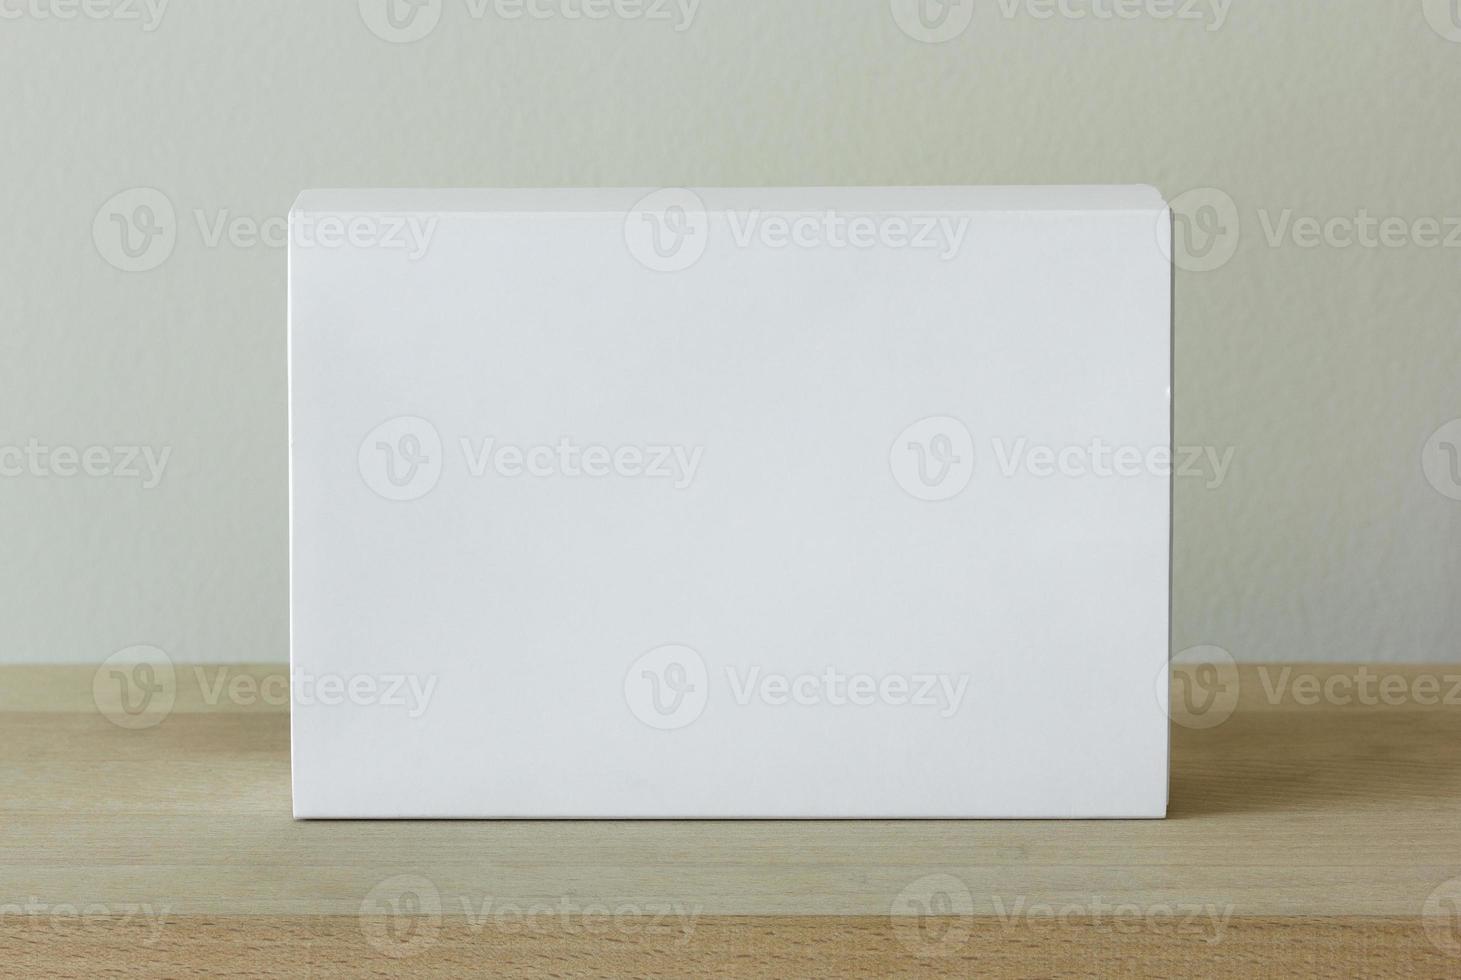 blanco blanco cartulina paquete caja Bosquejo en de madera mesa foto